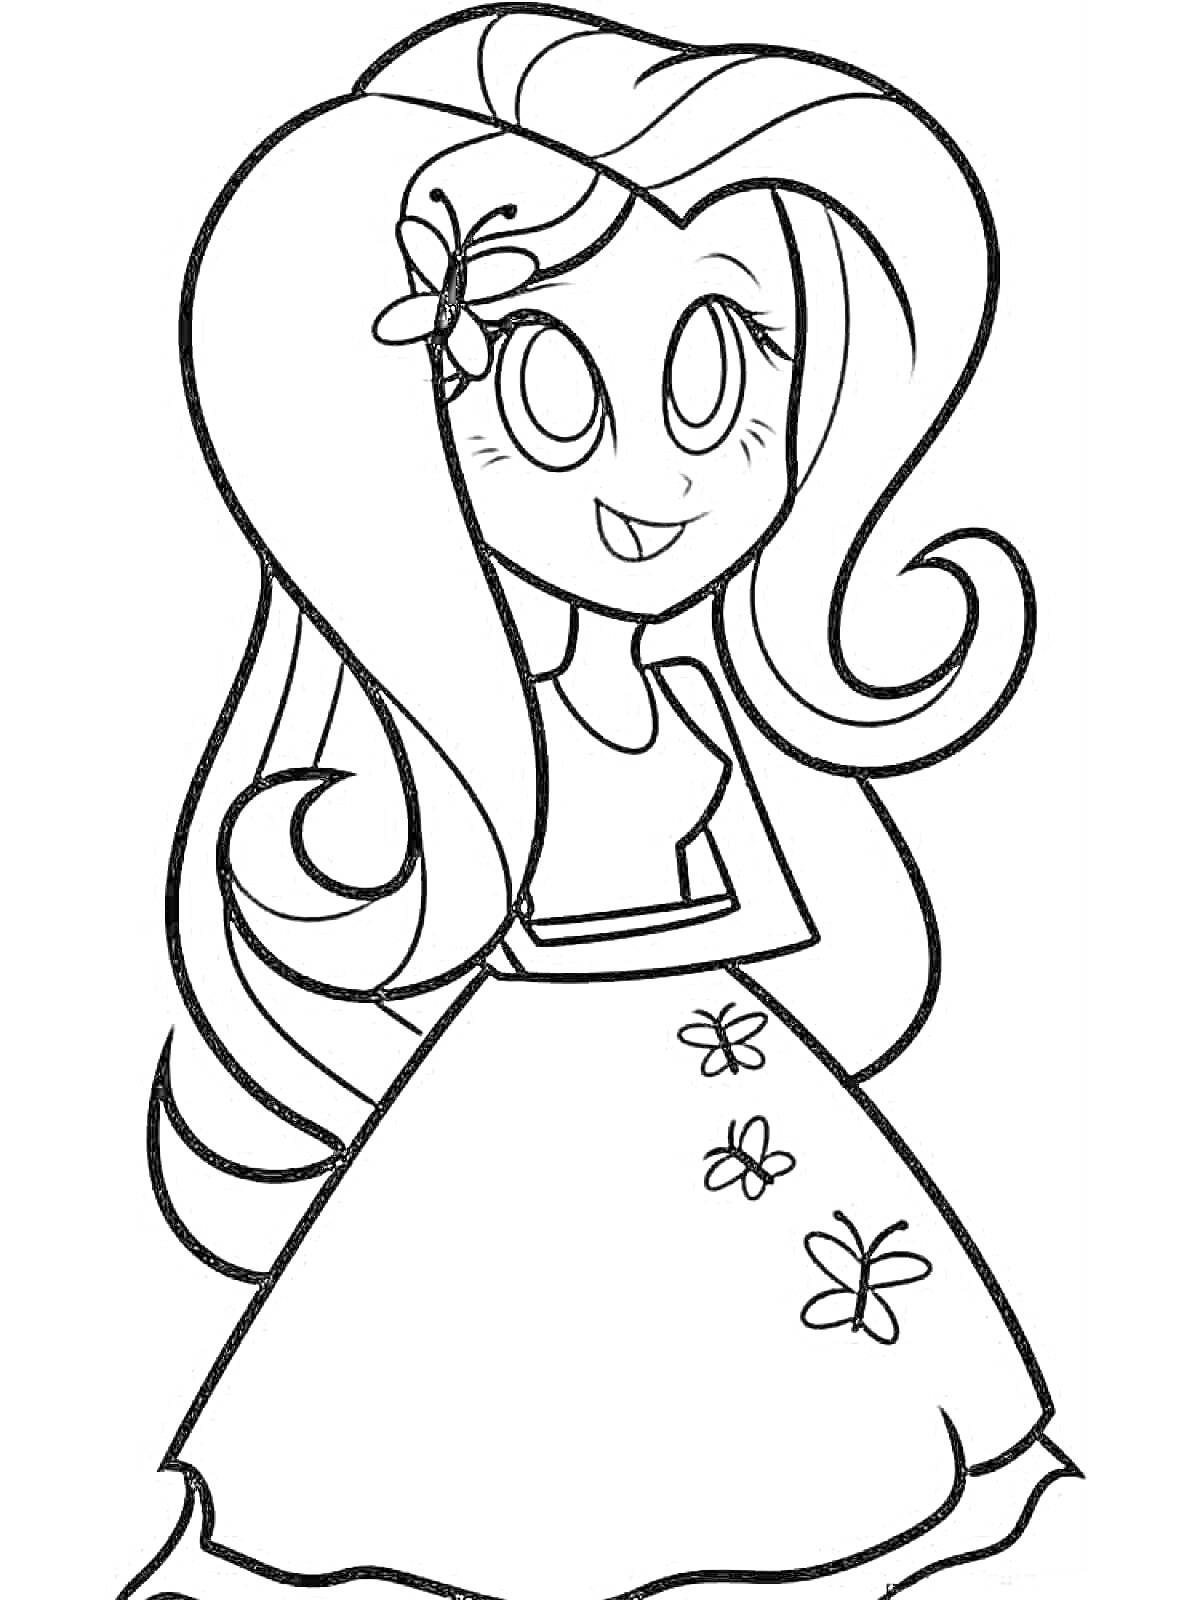 Раскраска Девушка с длинными волосами и цветами в волосах и на платье